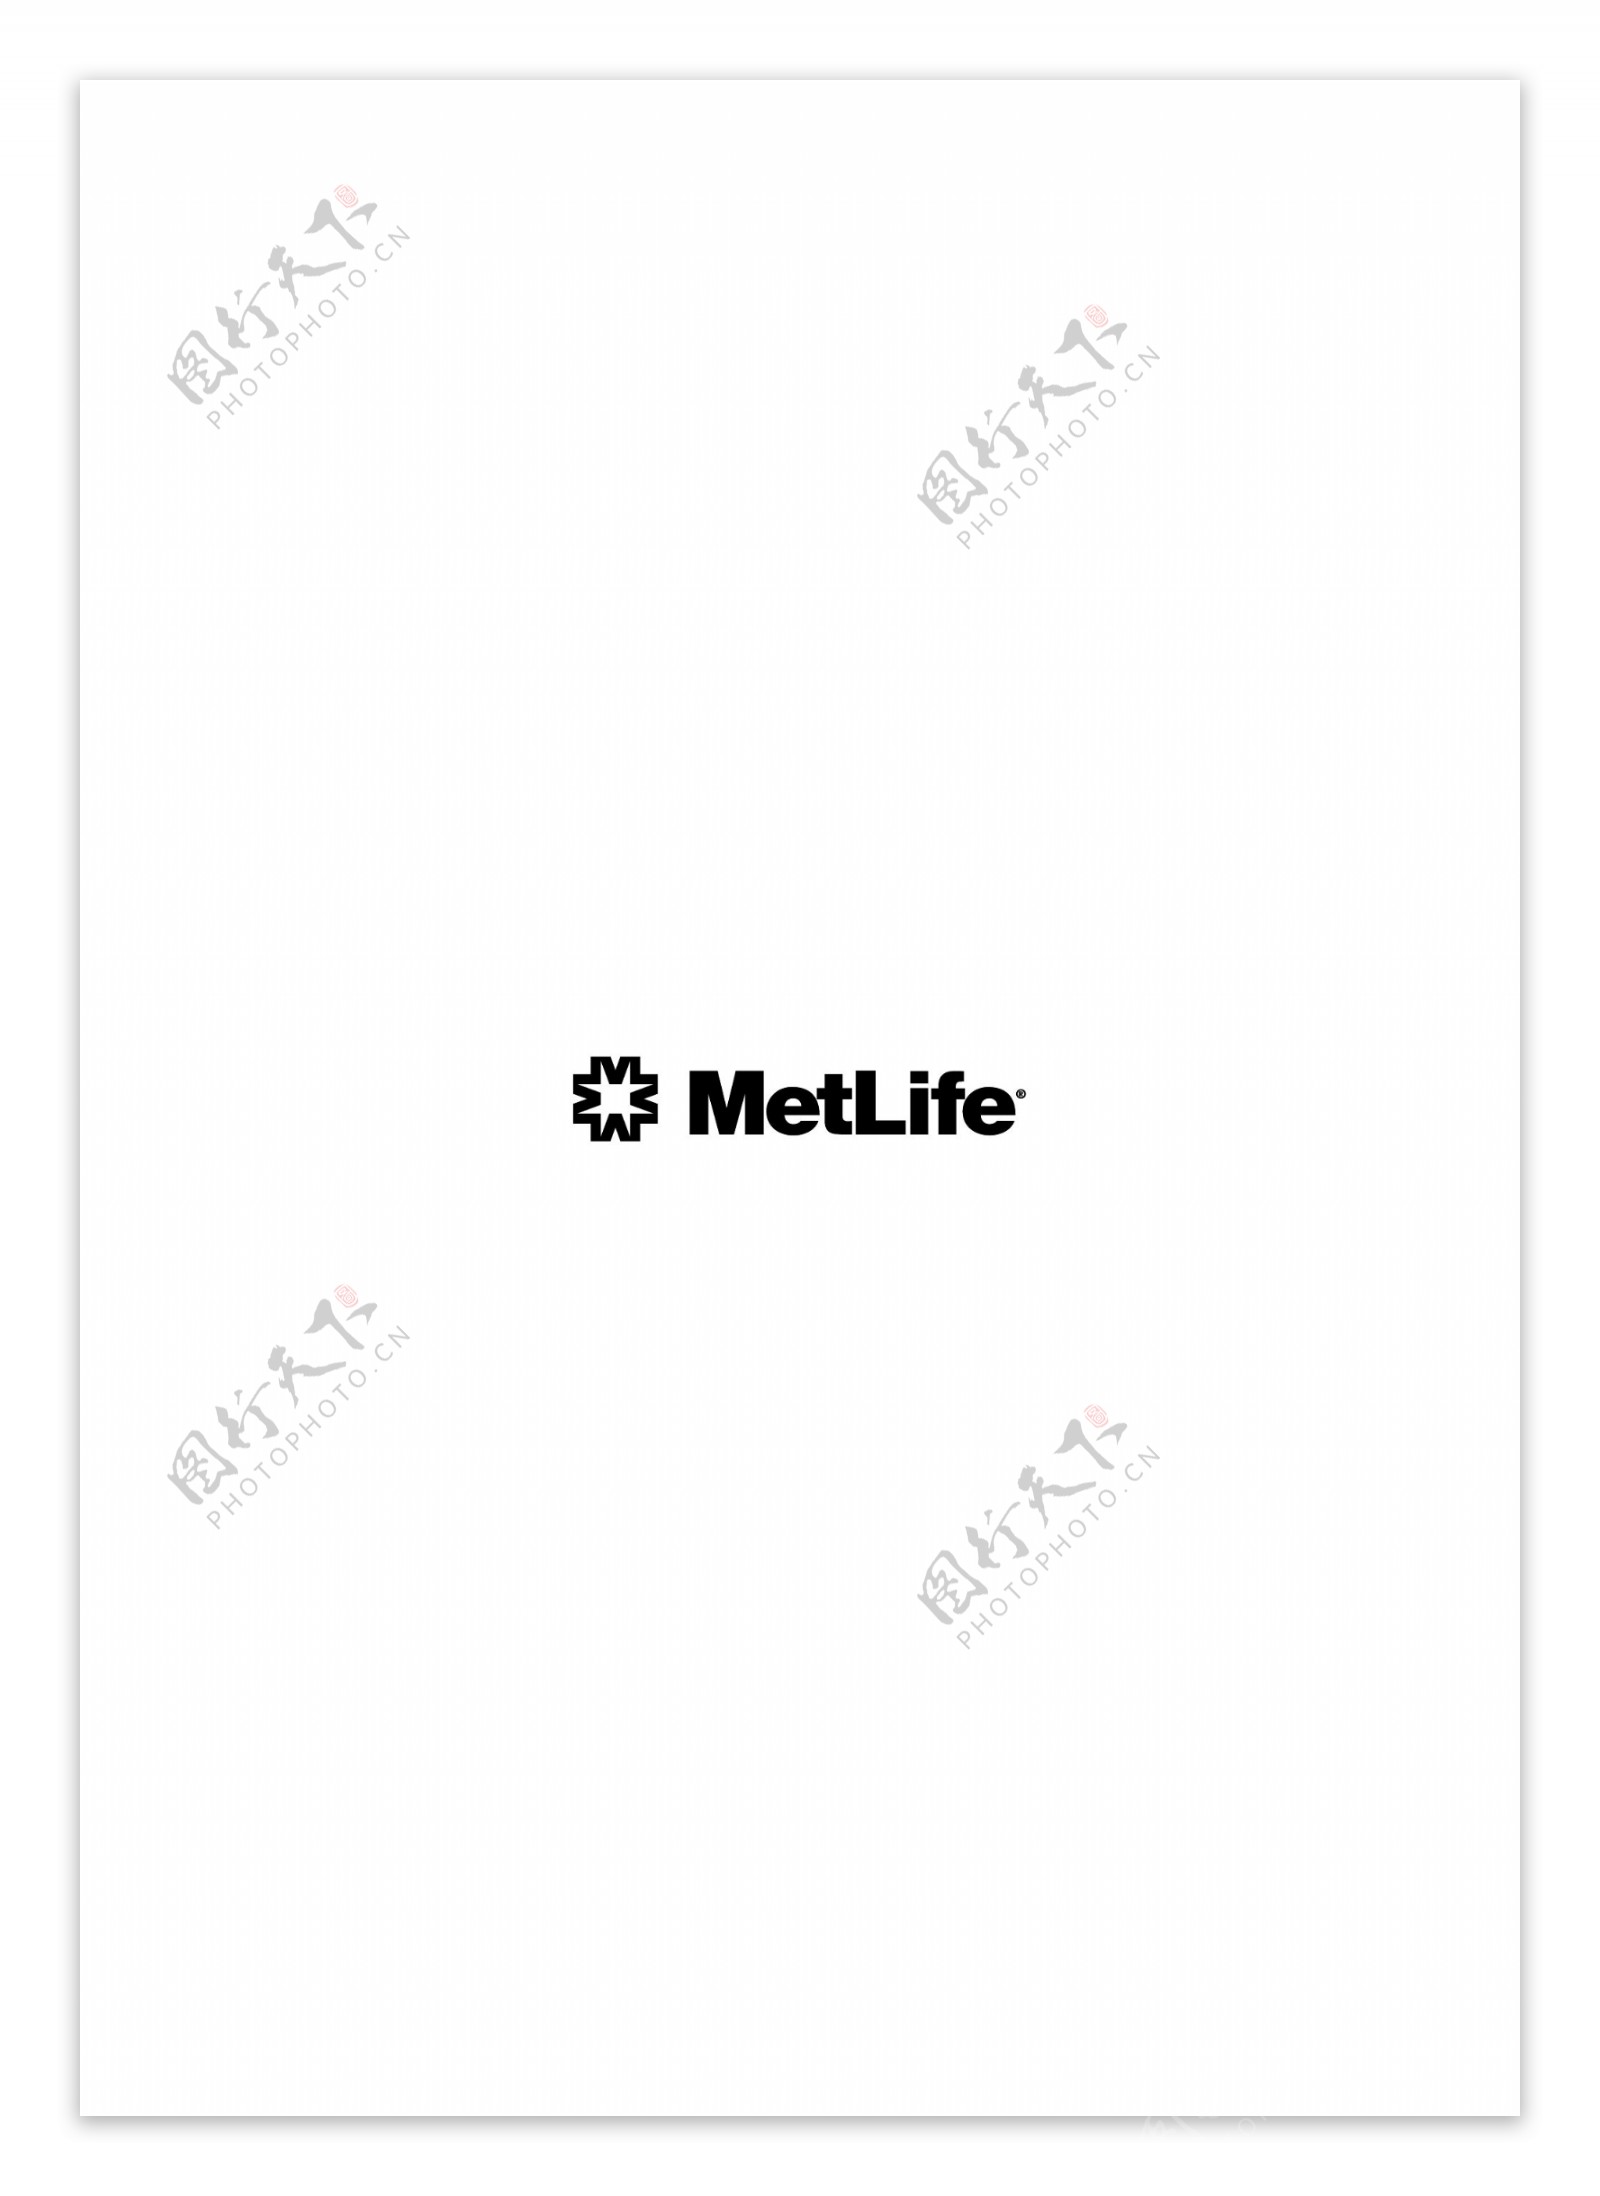 MetLifelogo设计欣赏MetLife人寿保险标志下载标志设计欣赏